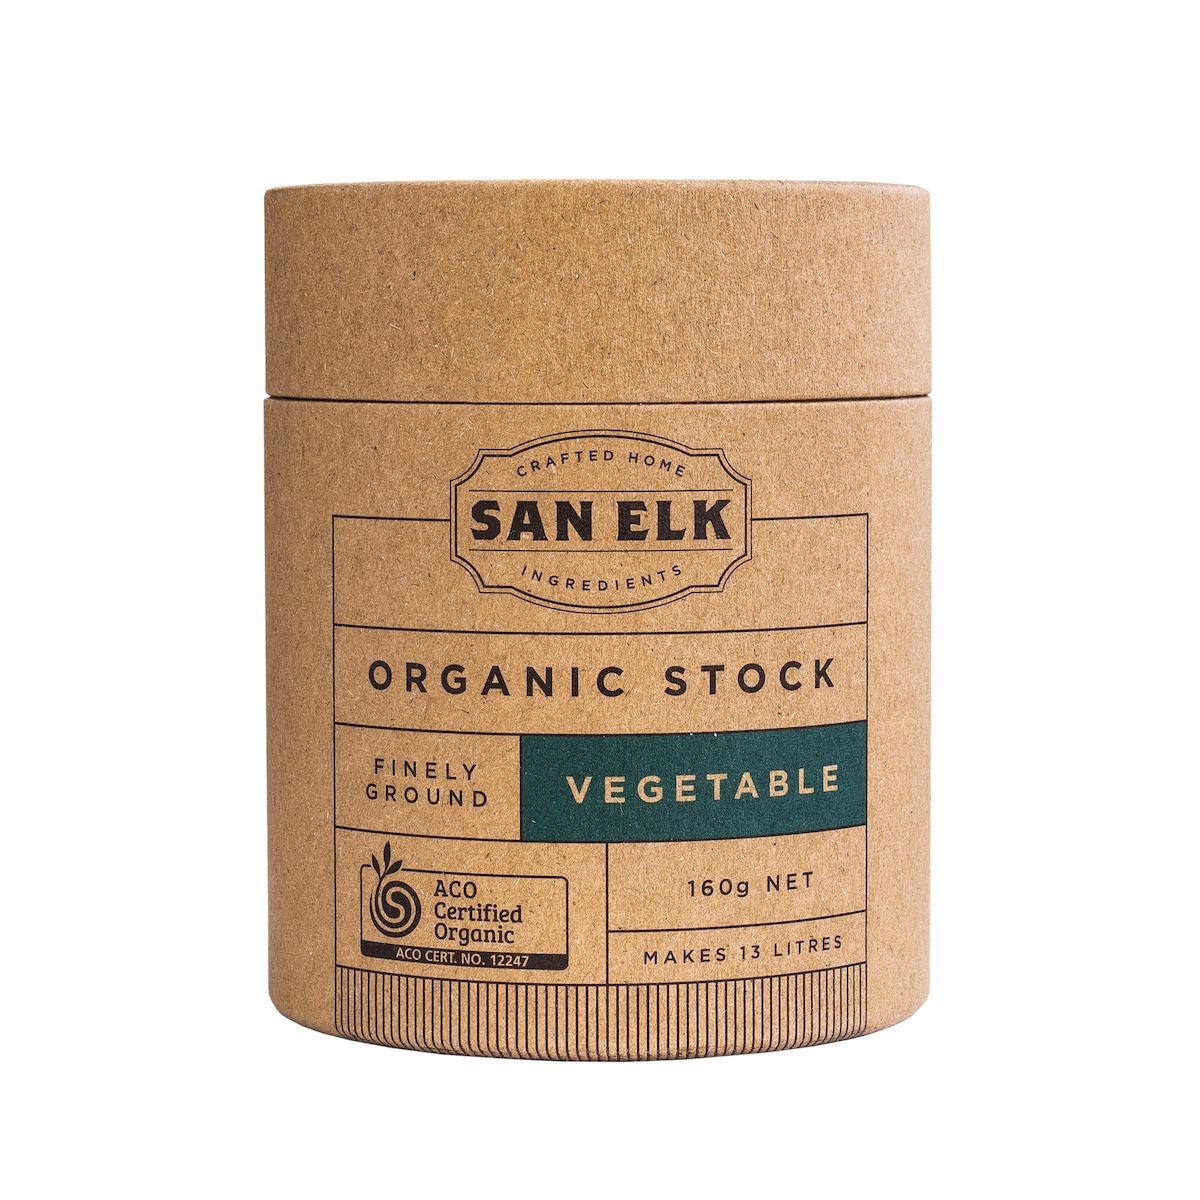 San Elk Certified Organic Vegetable Stock 160g